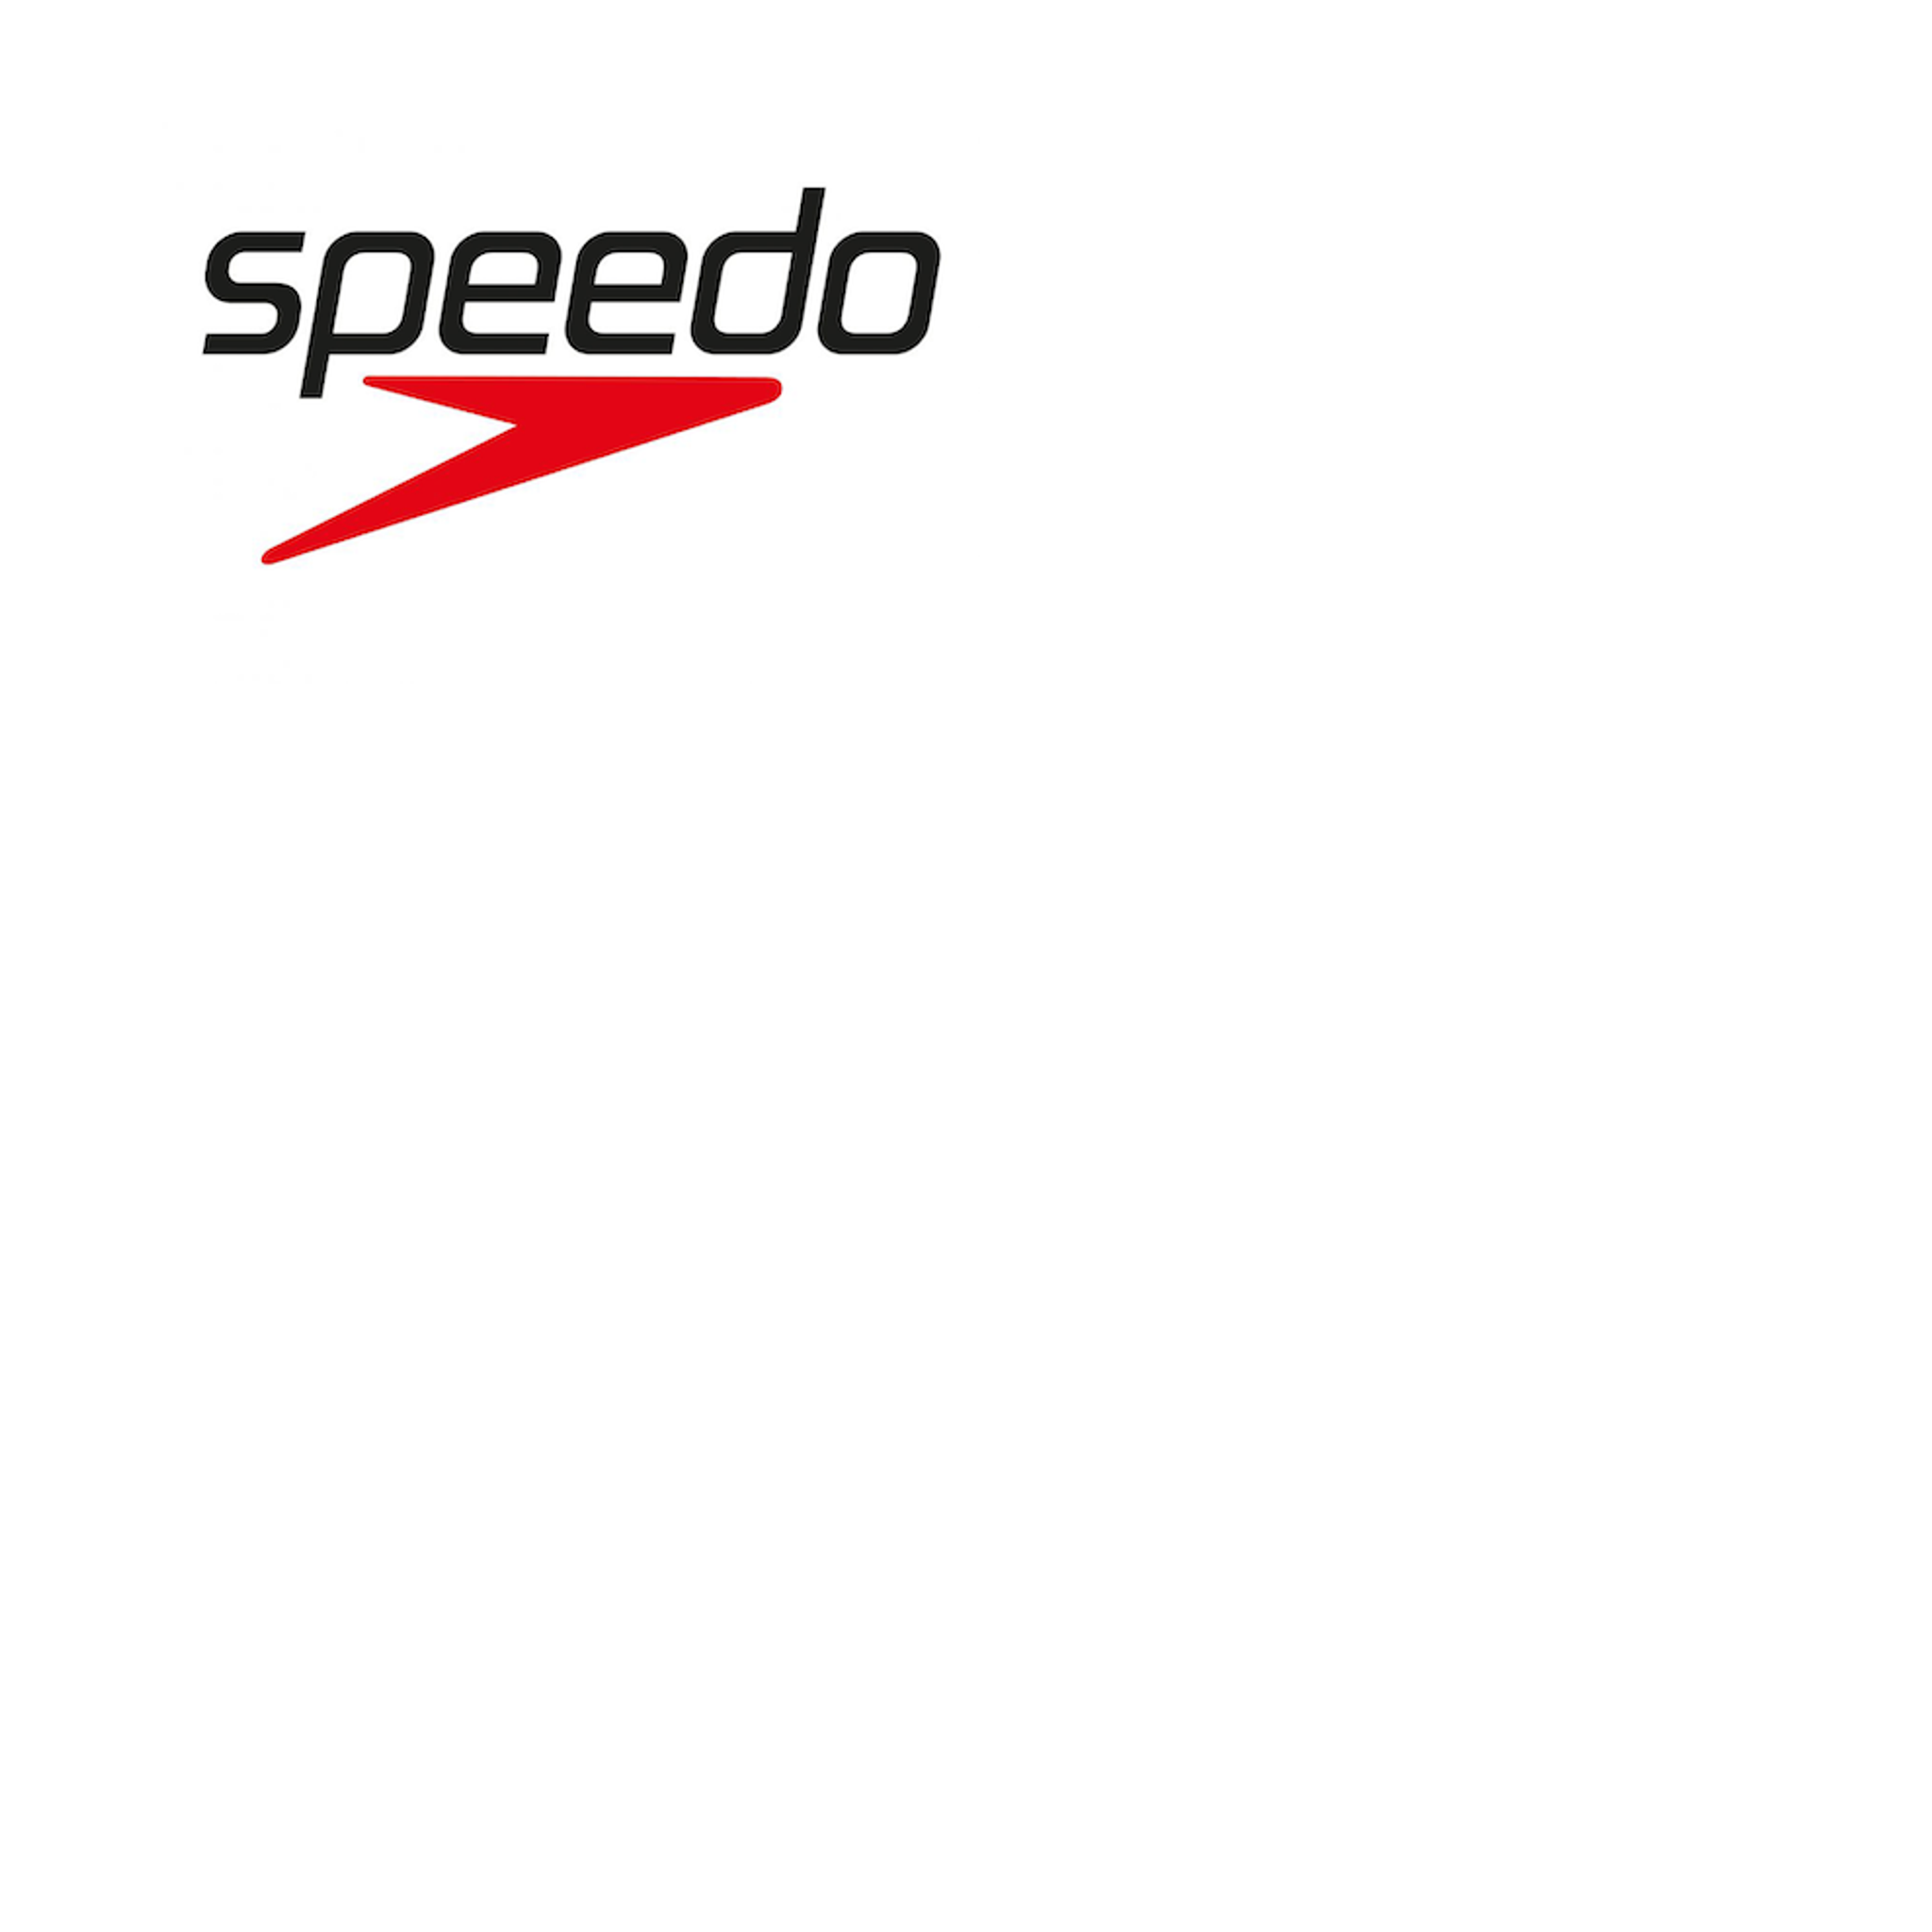  SPEEDO Swim & Wear logo